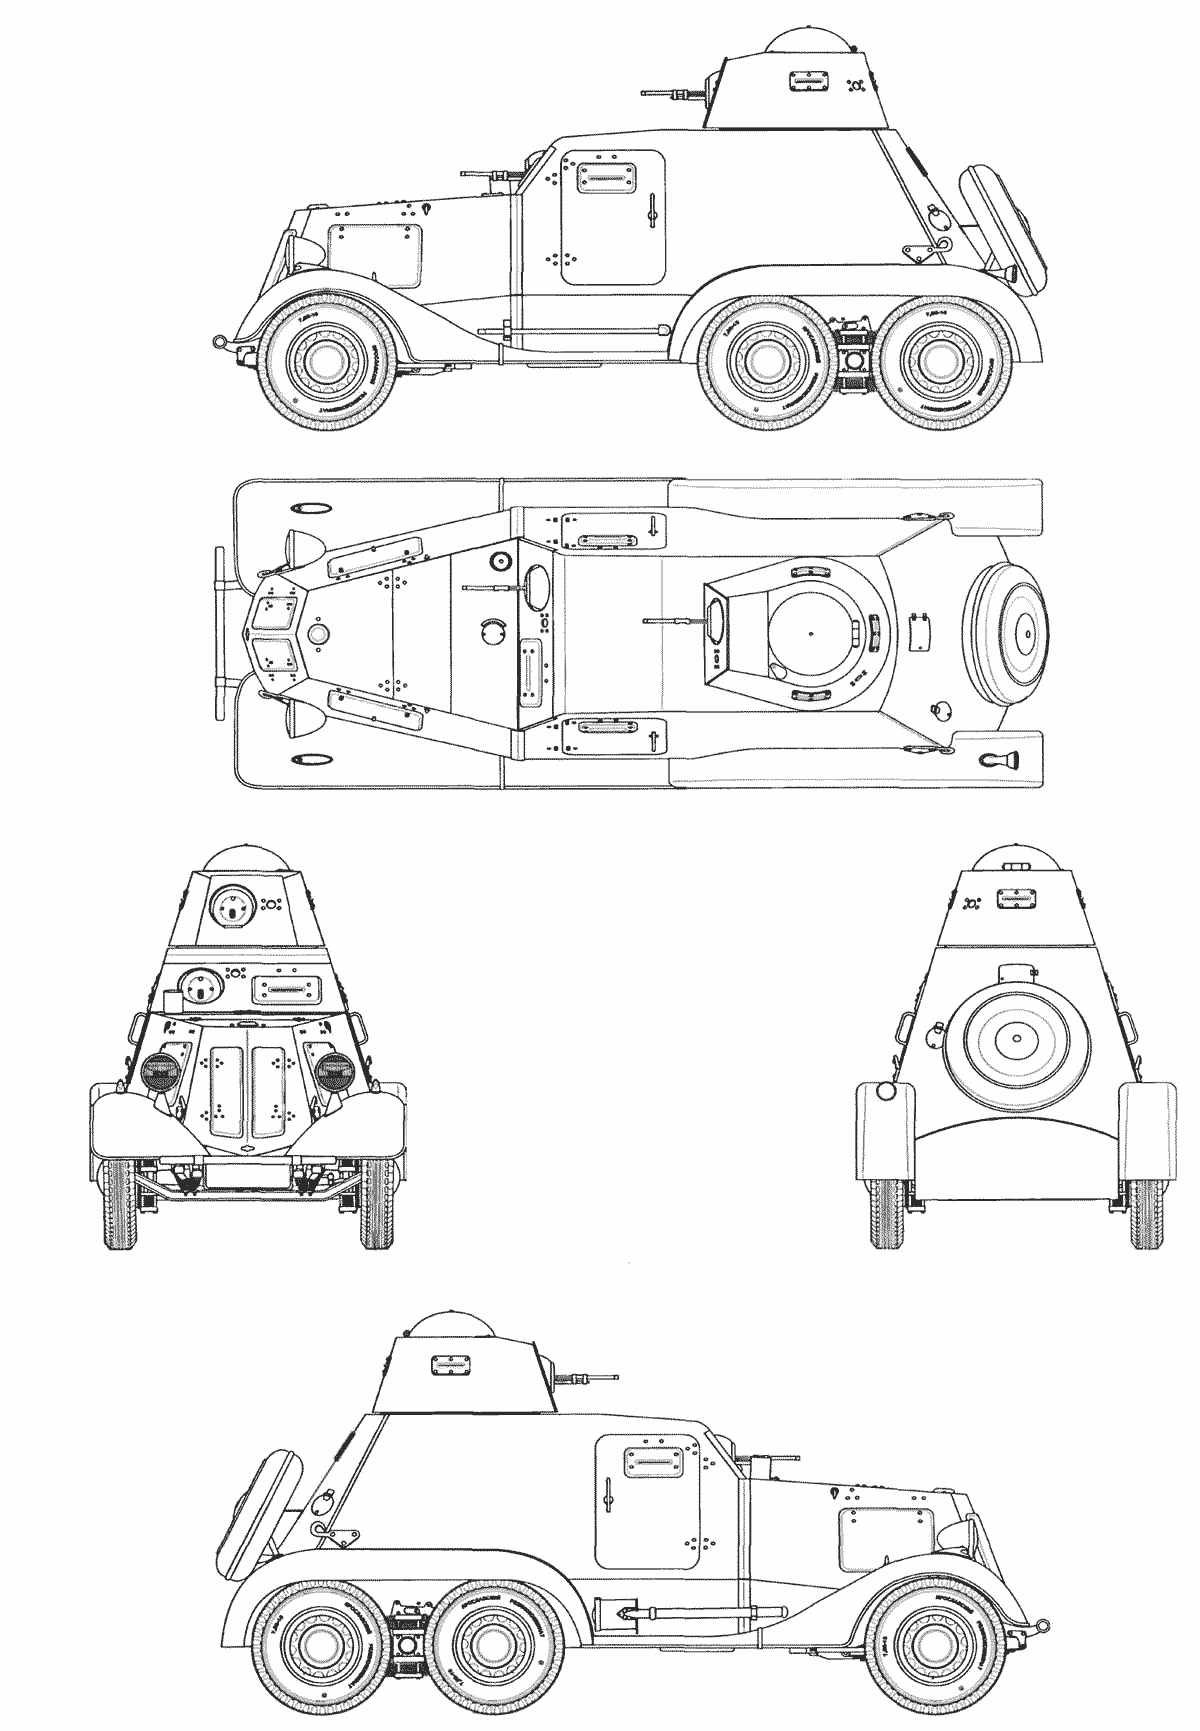 BA-21 blueprint